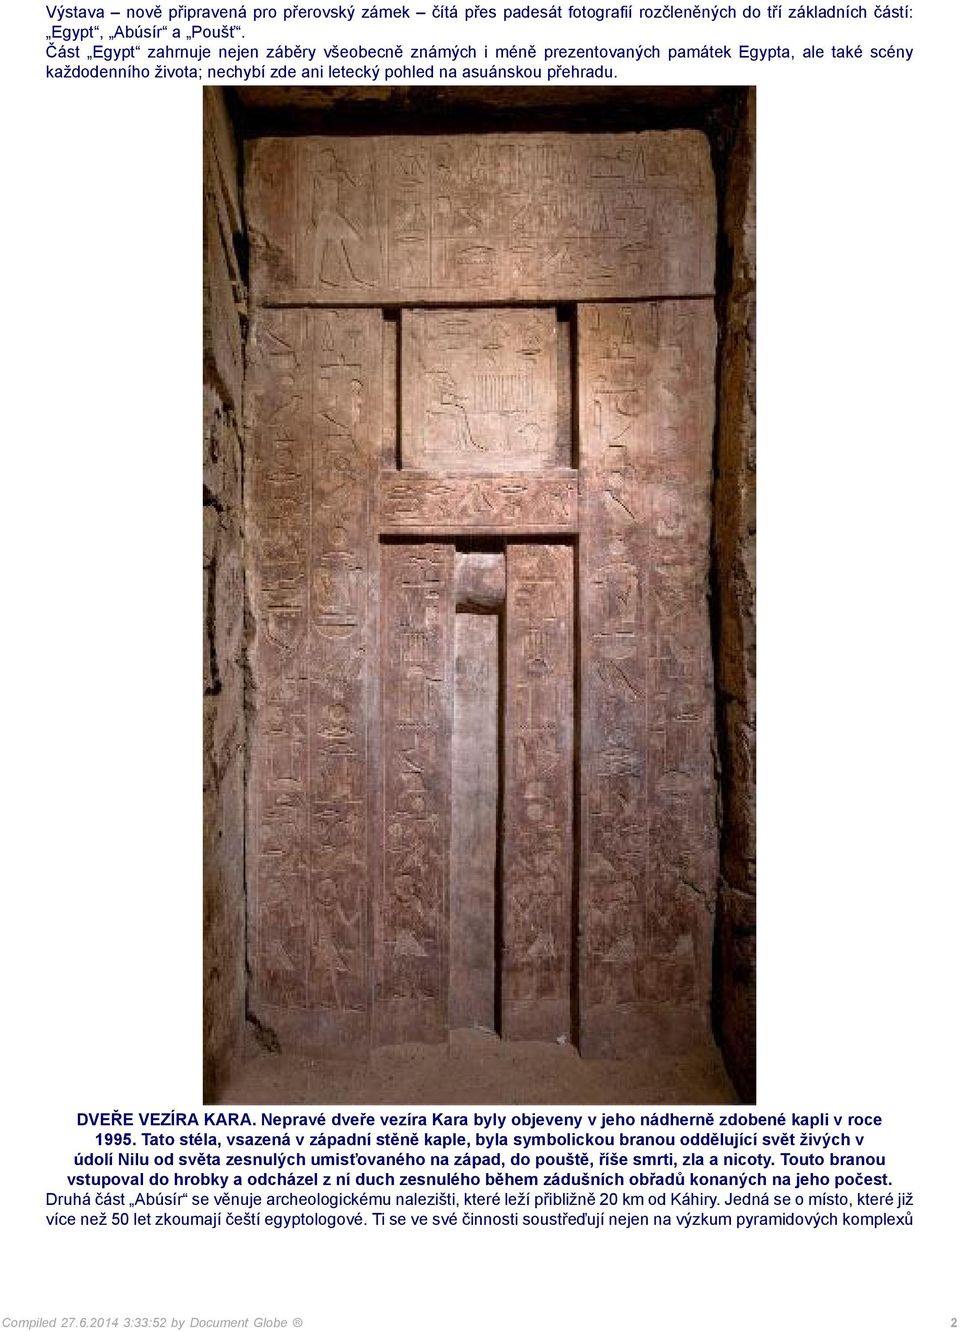 Nepravé dveře vezíra Kara byly objeveny v jeho nádherně zdobené kapli v roce 1995.